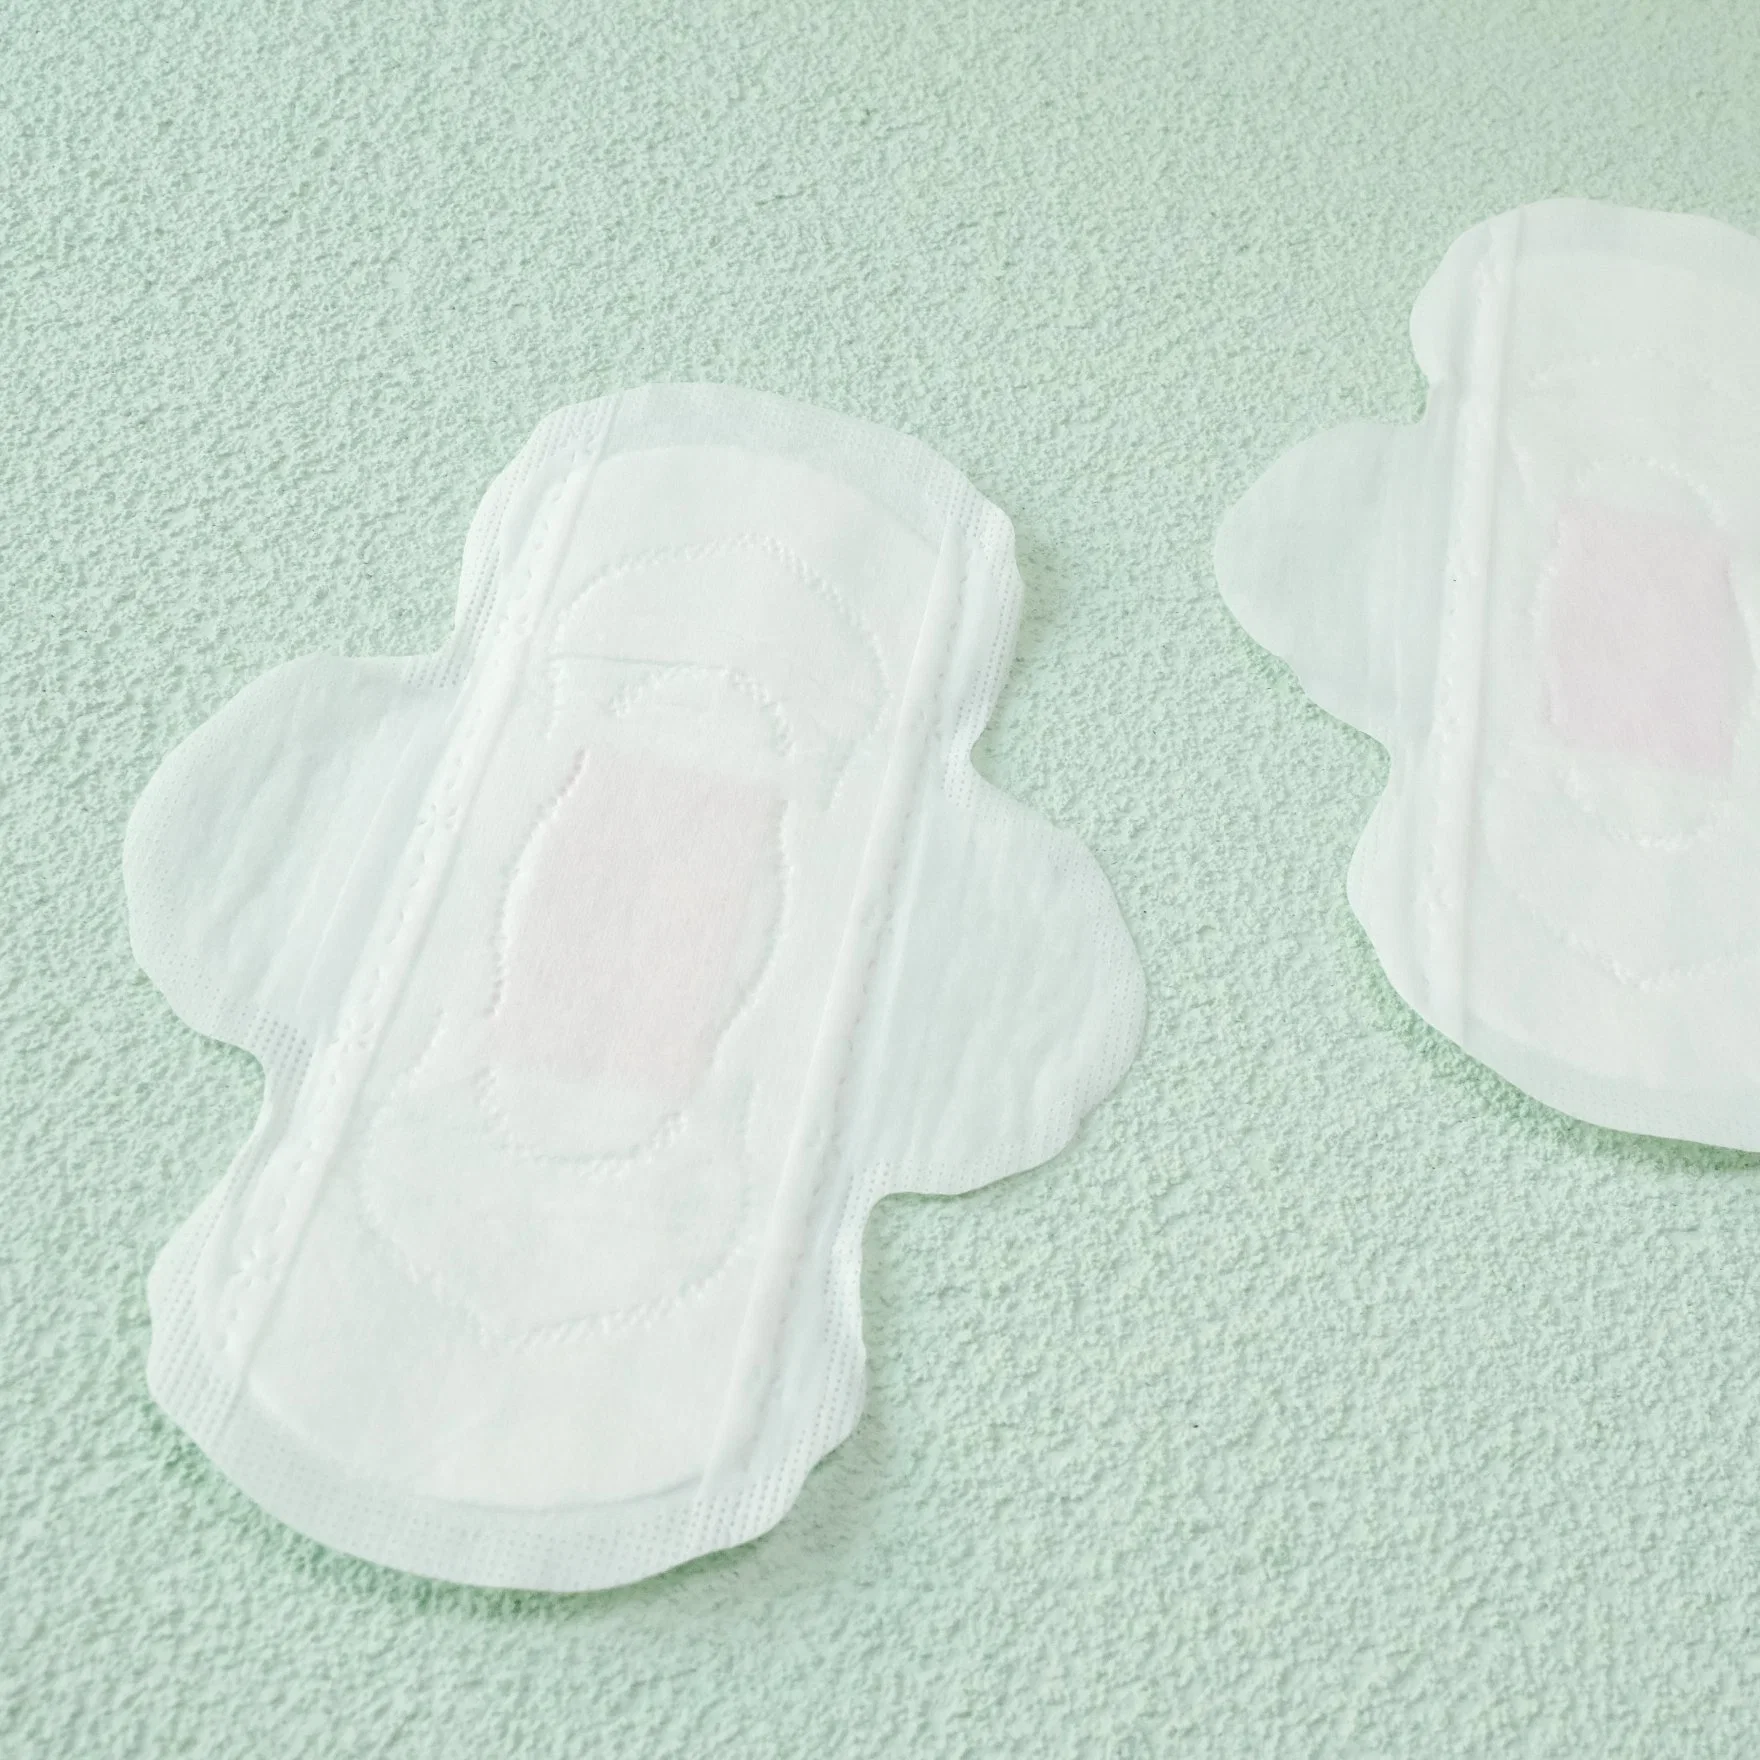 Гигиенические гигиенические прокладки Premium 185 мм Lady Sanitary Panty Lienr защищают вас День и ночь